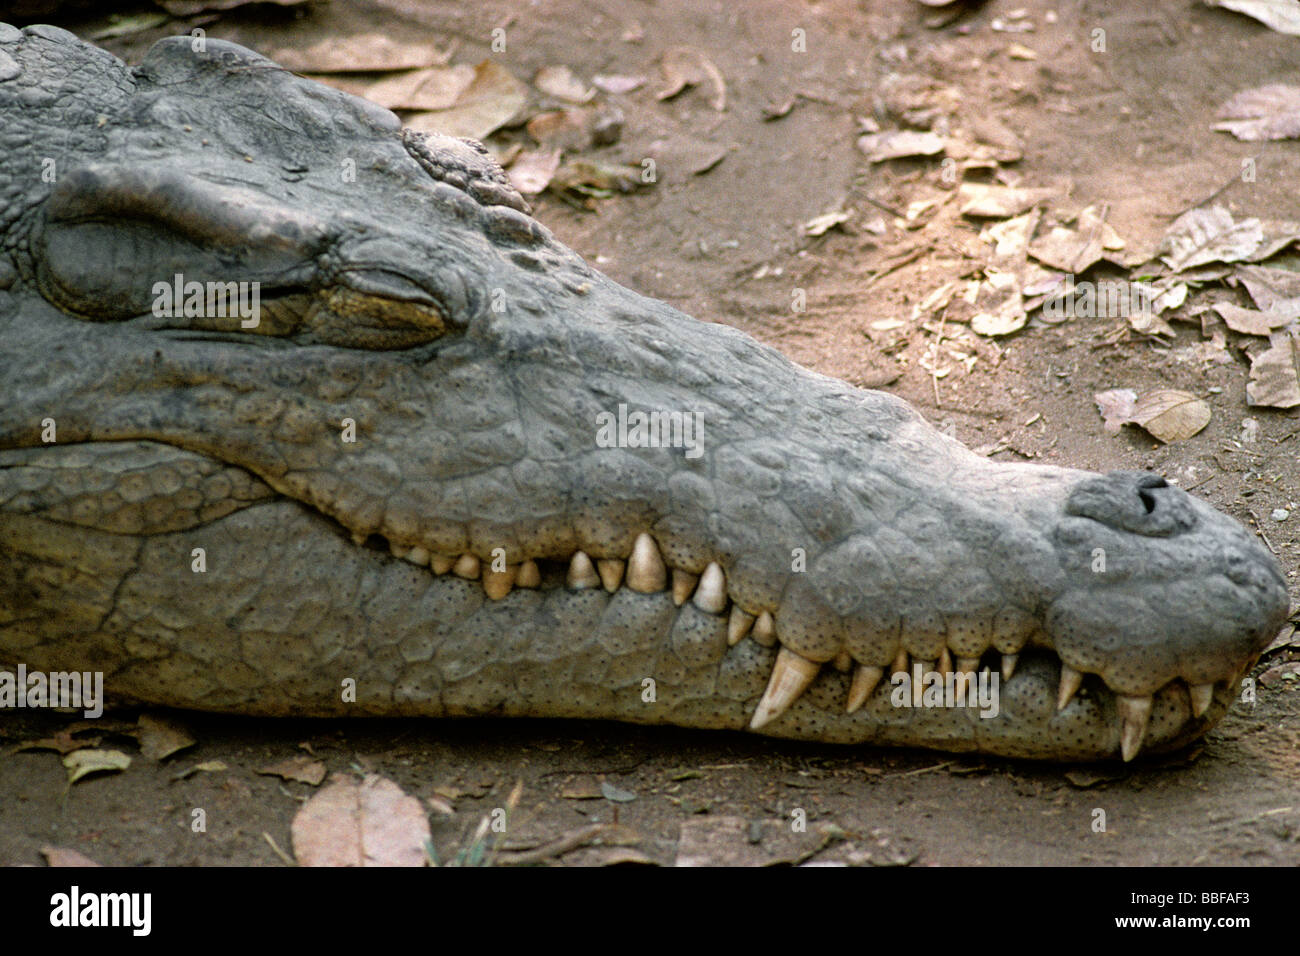 Crocodile du Nil Crocodylus niloticus avec les mâchoires fermées montrant le museau pointu Banque D'Images